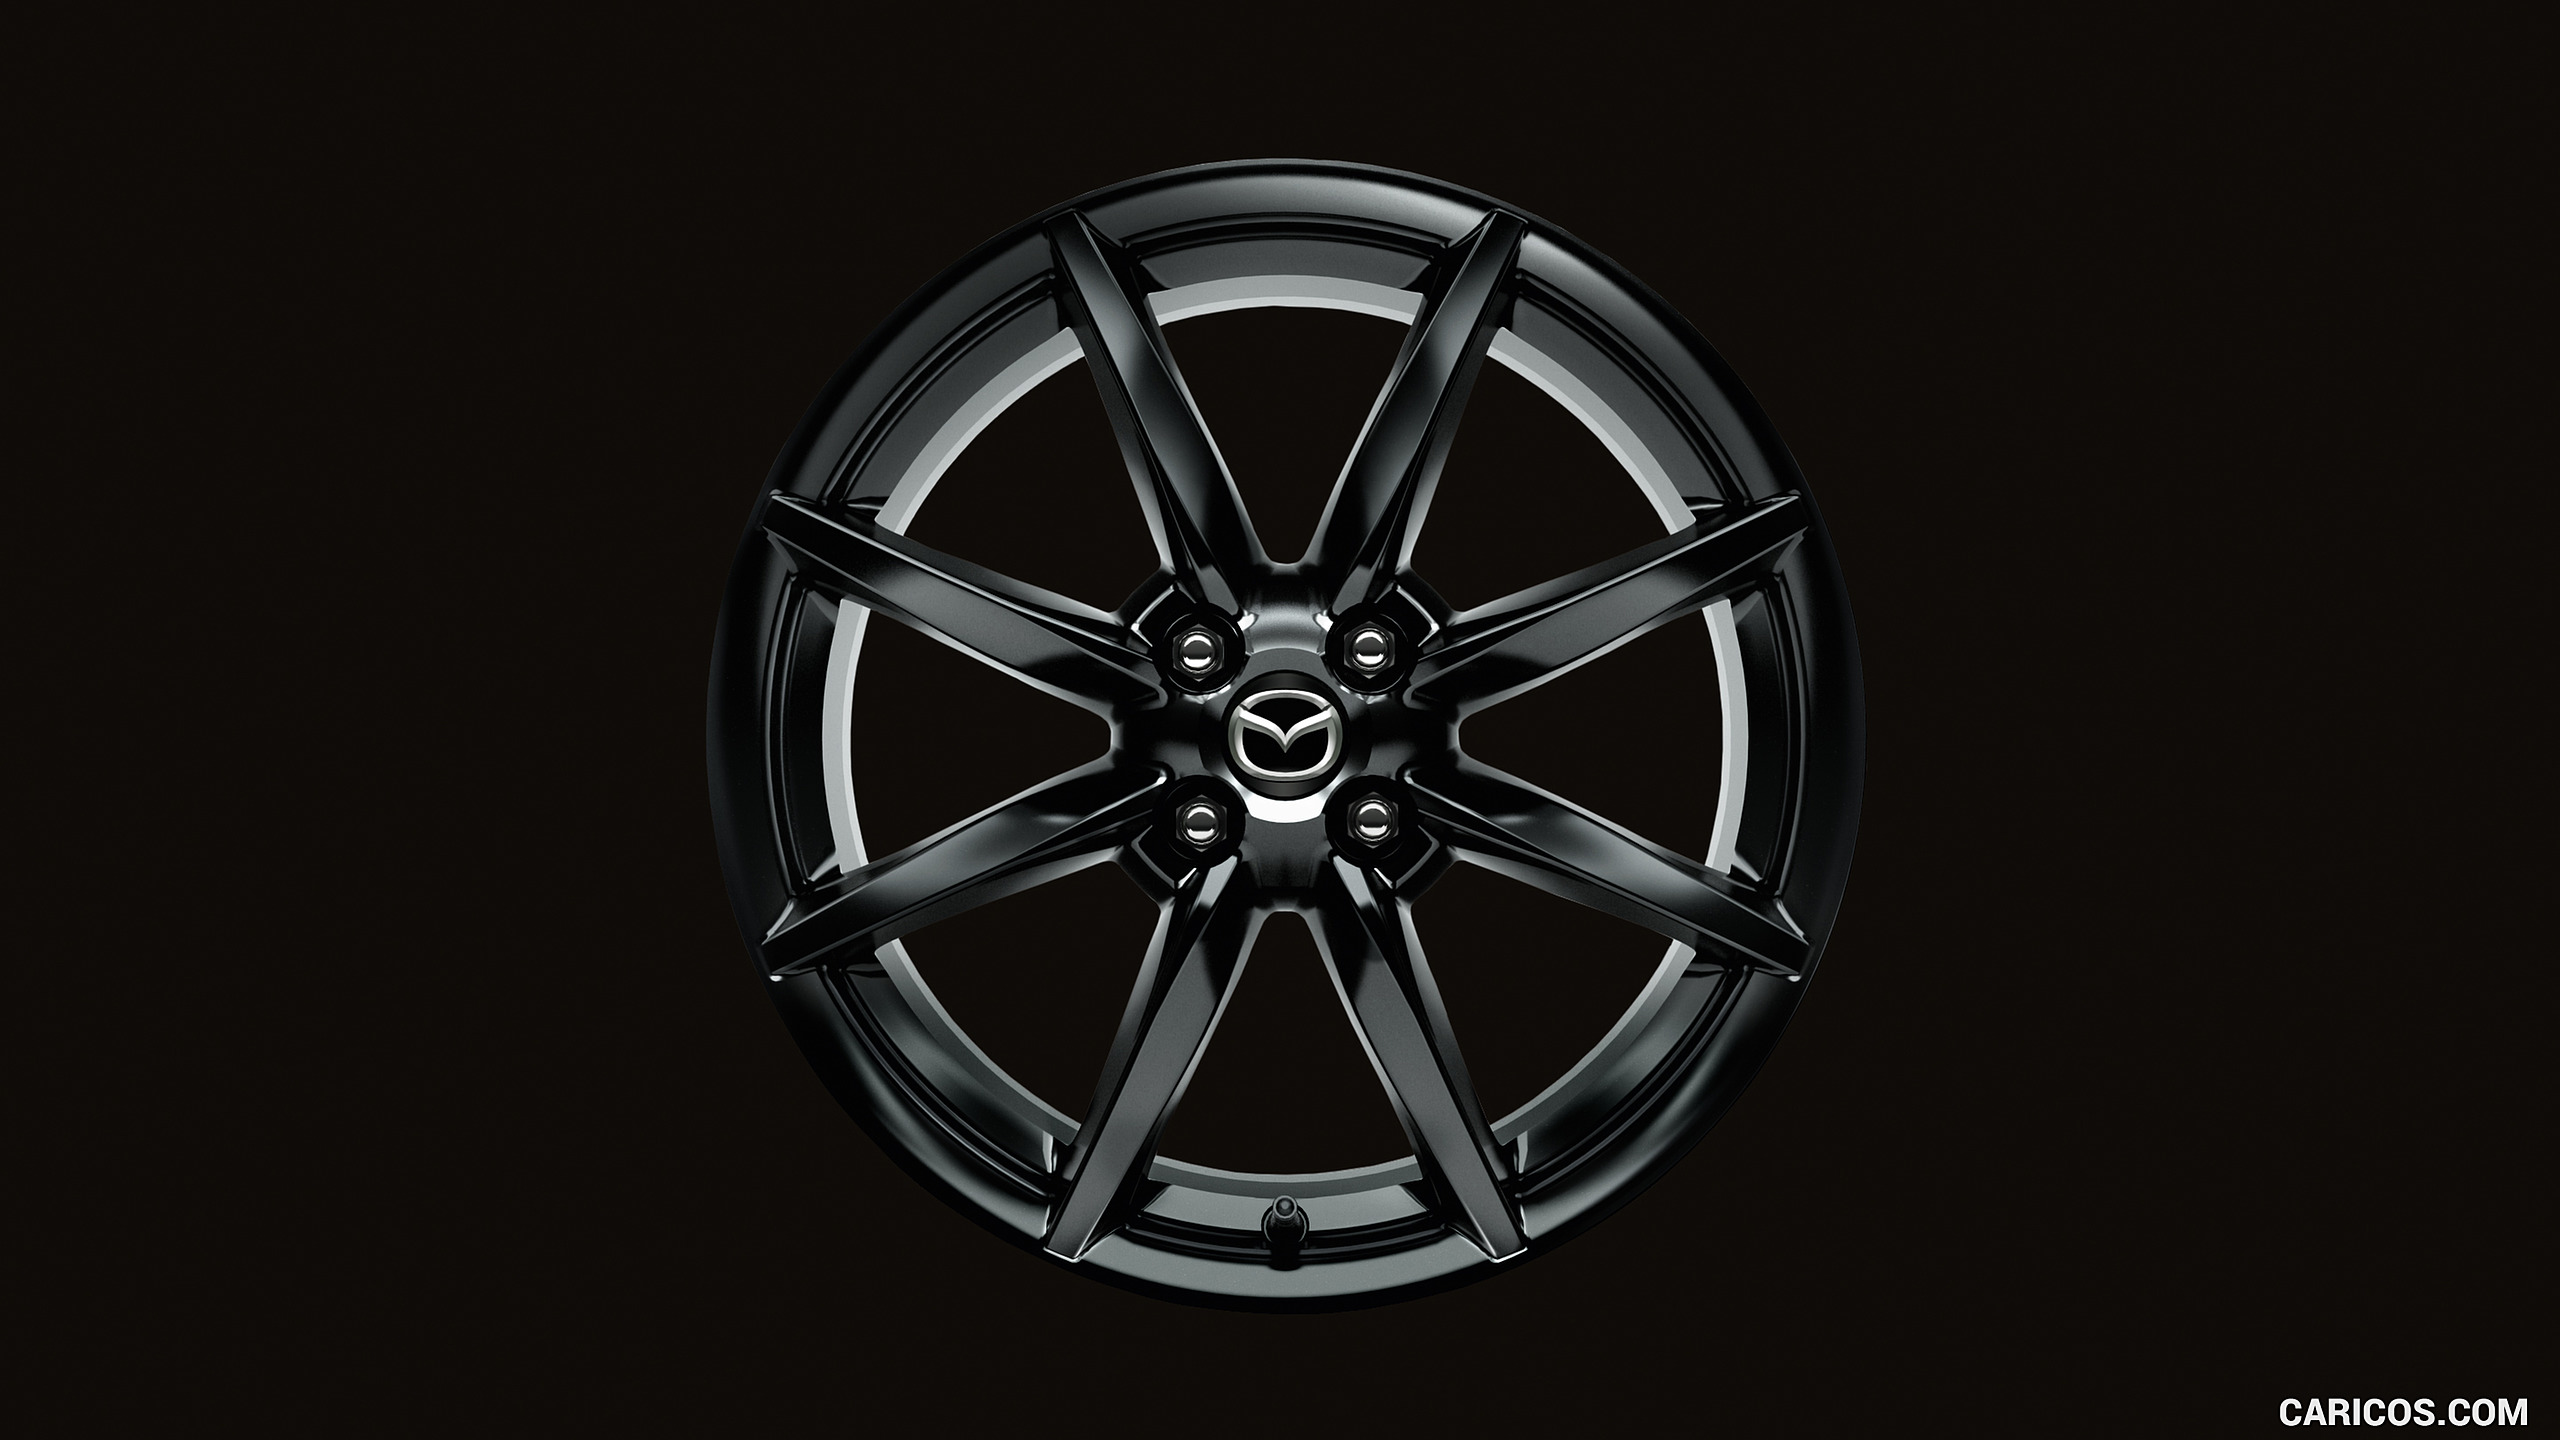 2019 Mazda MX-5 Roadster - Wheel, #85 of 101